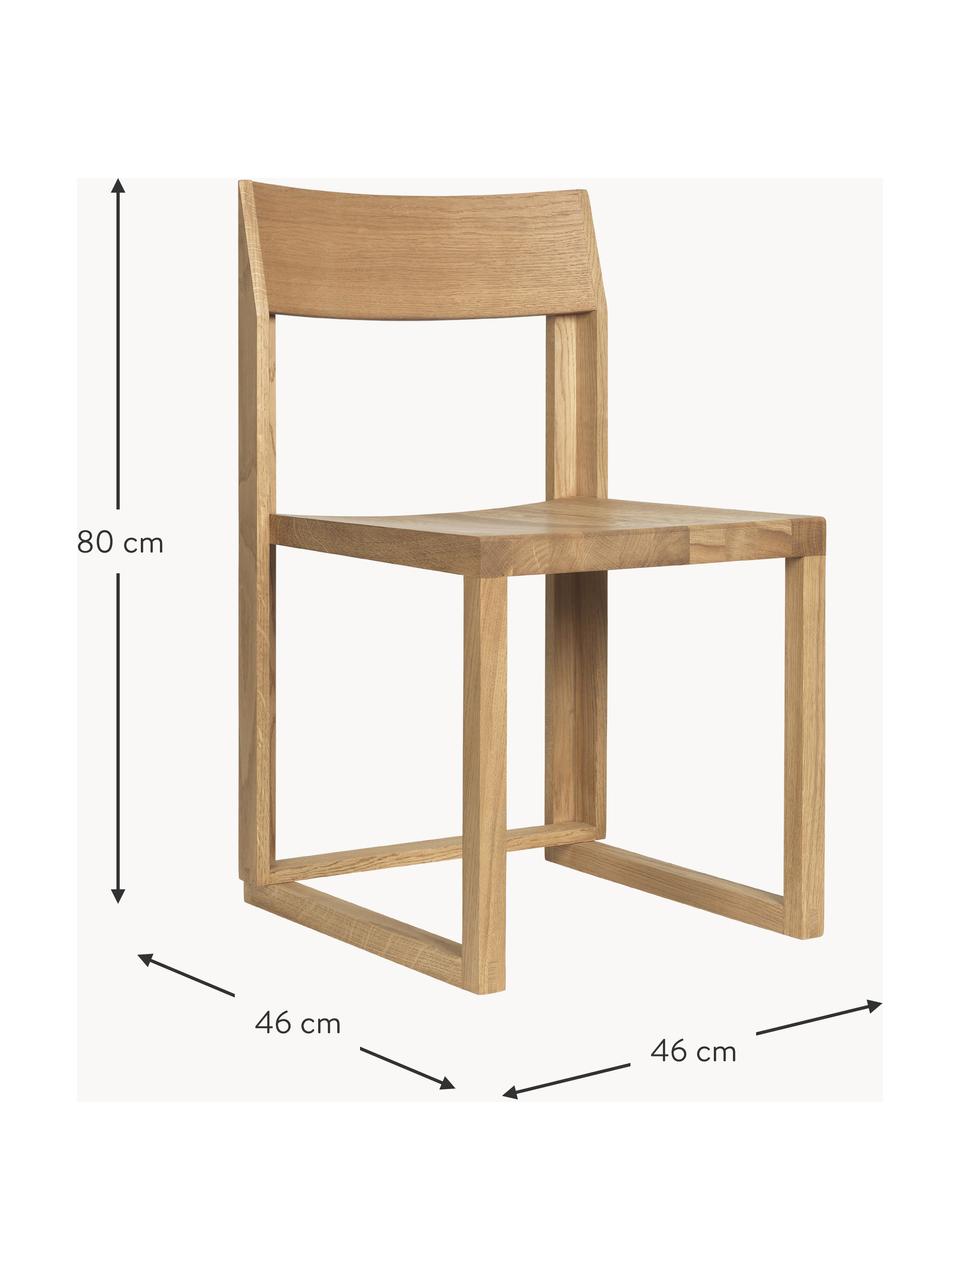 Drevená stolička z dubového dreva Outline, Dubové drevo, ošetrené olejom, s FSC certifikátom, Dubové drevo, Š 46 x H 46 cm